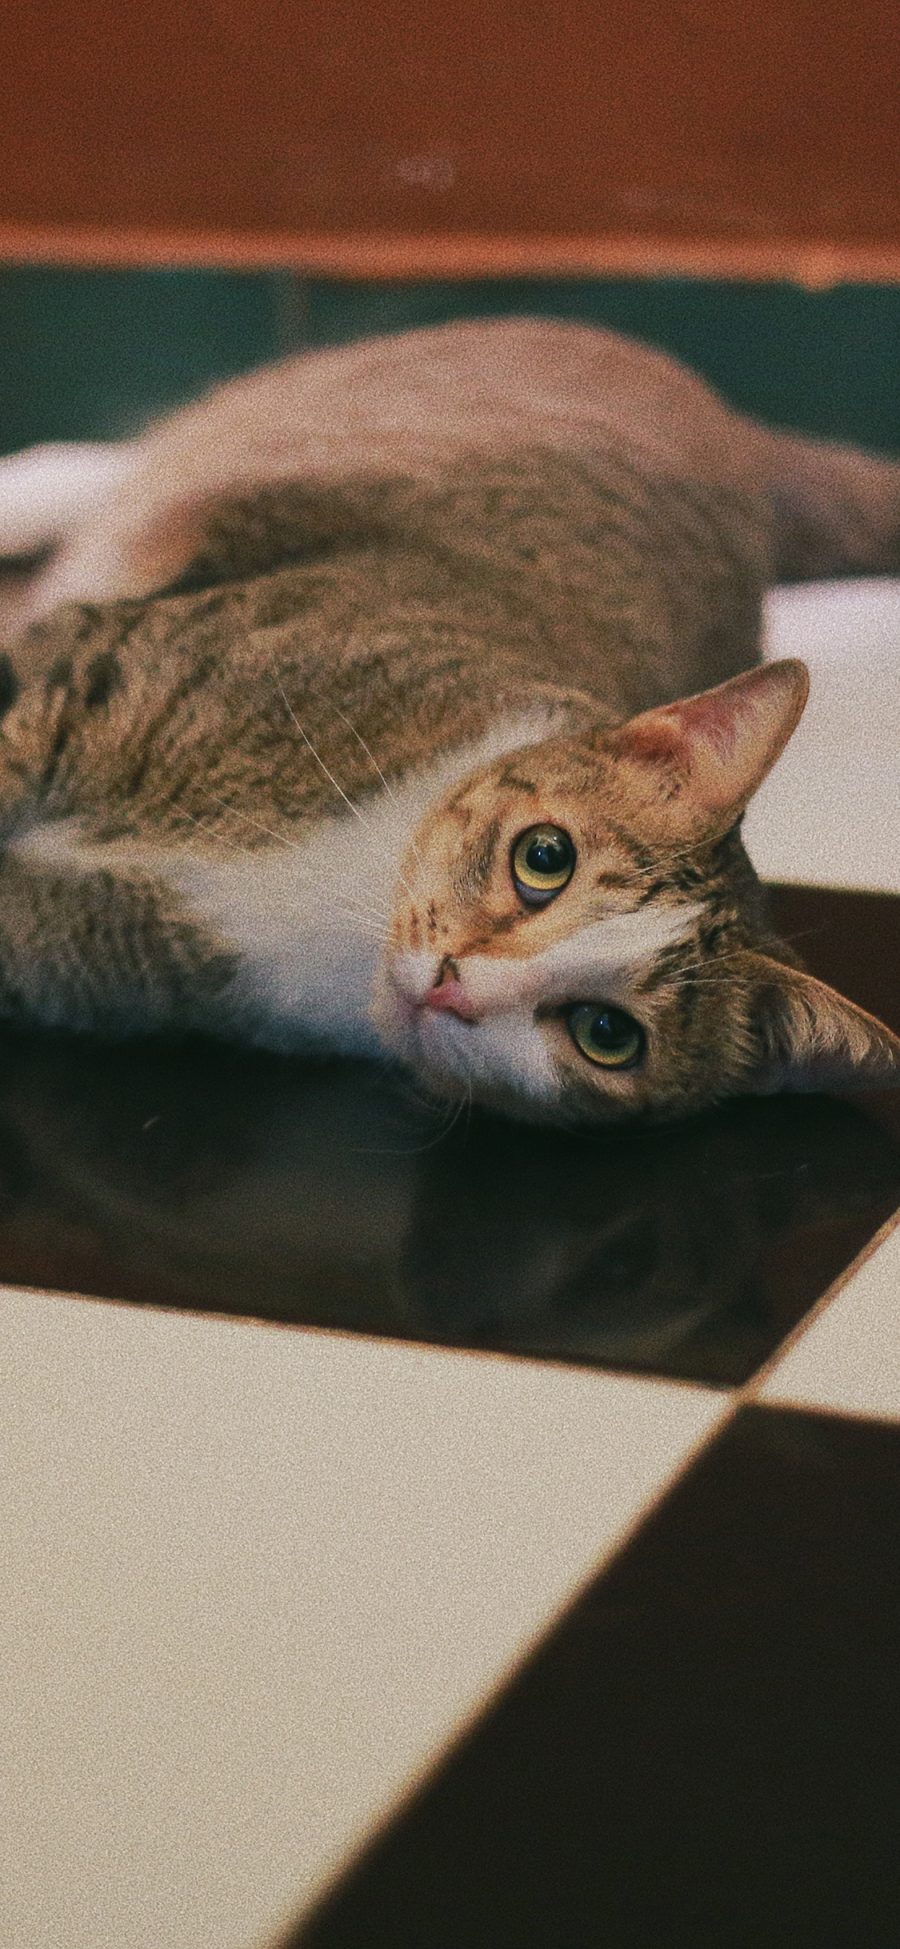 [2436×1125]宠物 猫咪 视线 瓷砖 苹果手机壁纸图片